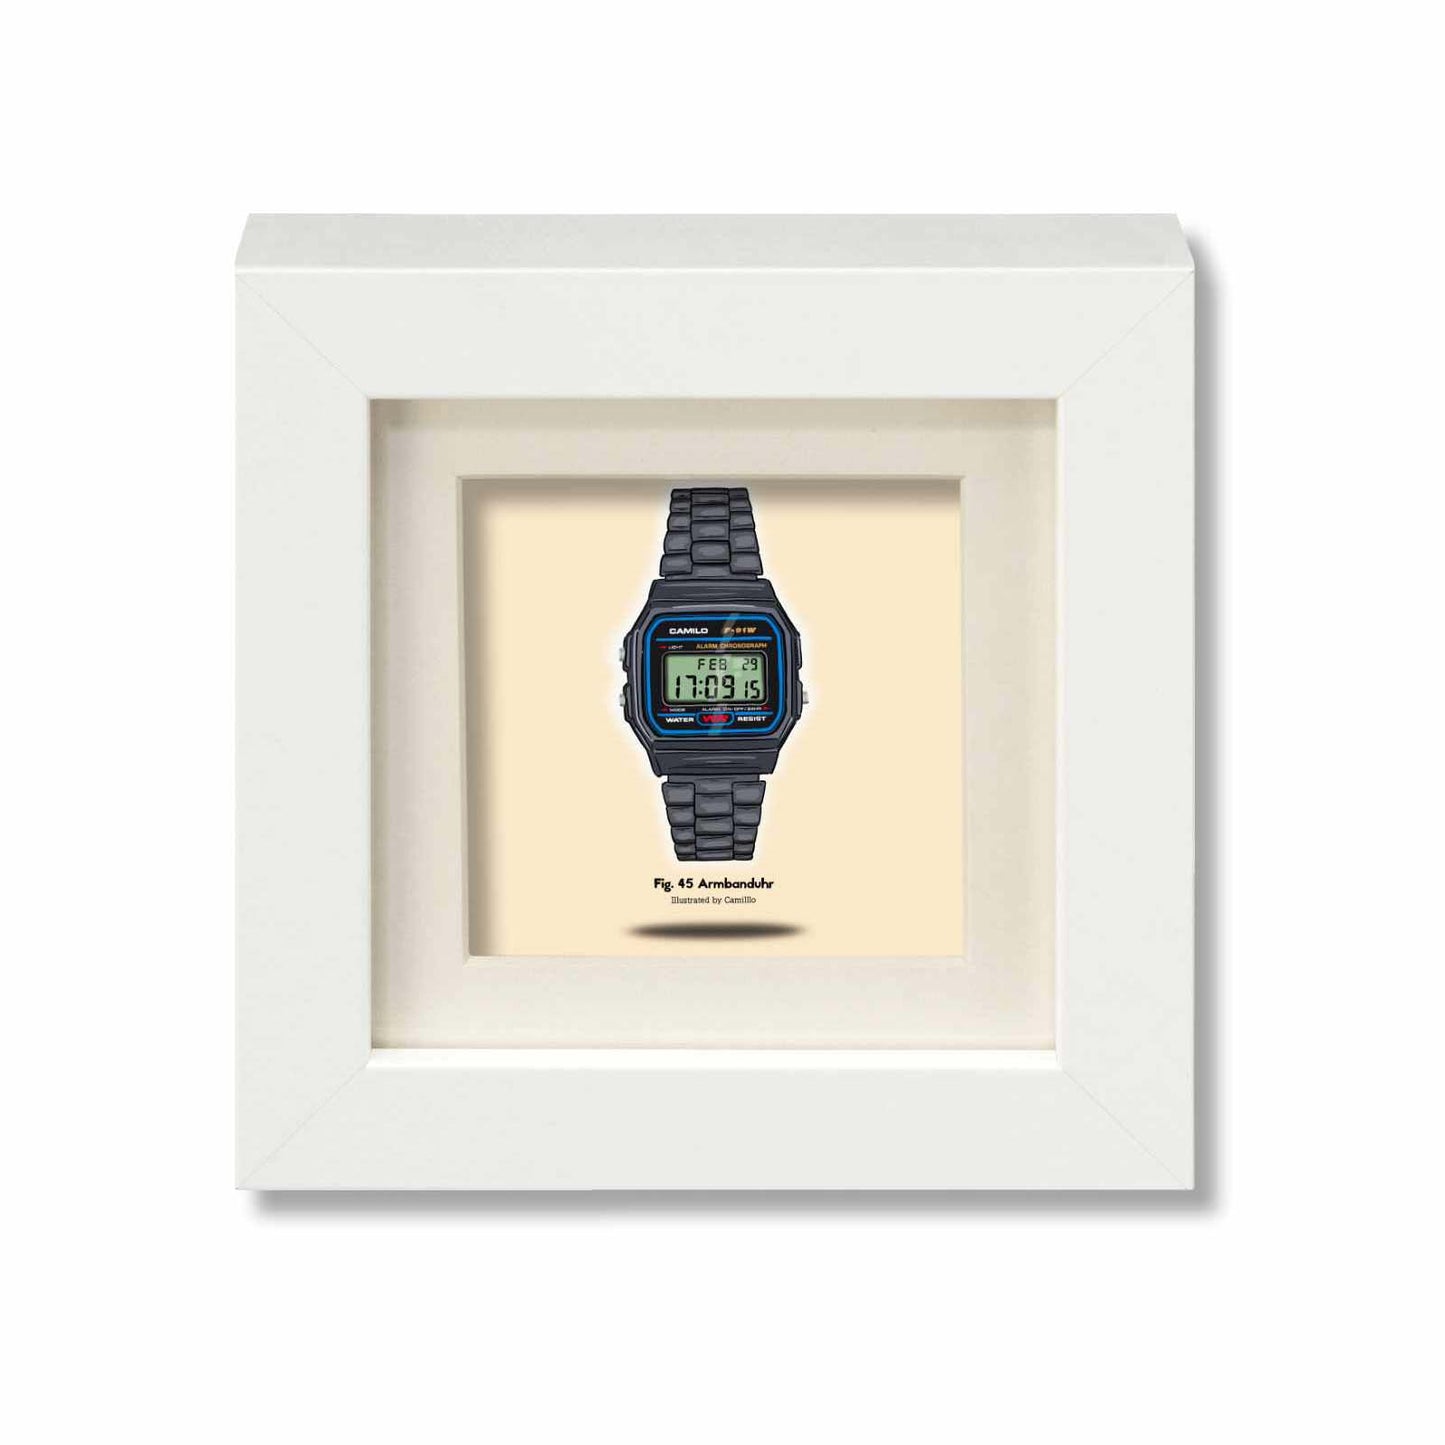 Giclée-Druck einer Armbanduhr - Klassisches Design - weißer Rahmen - kleine Größe